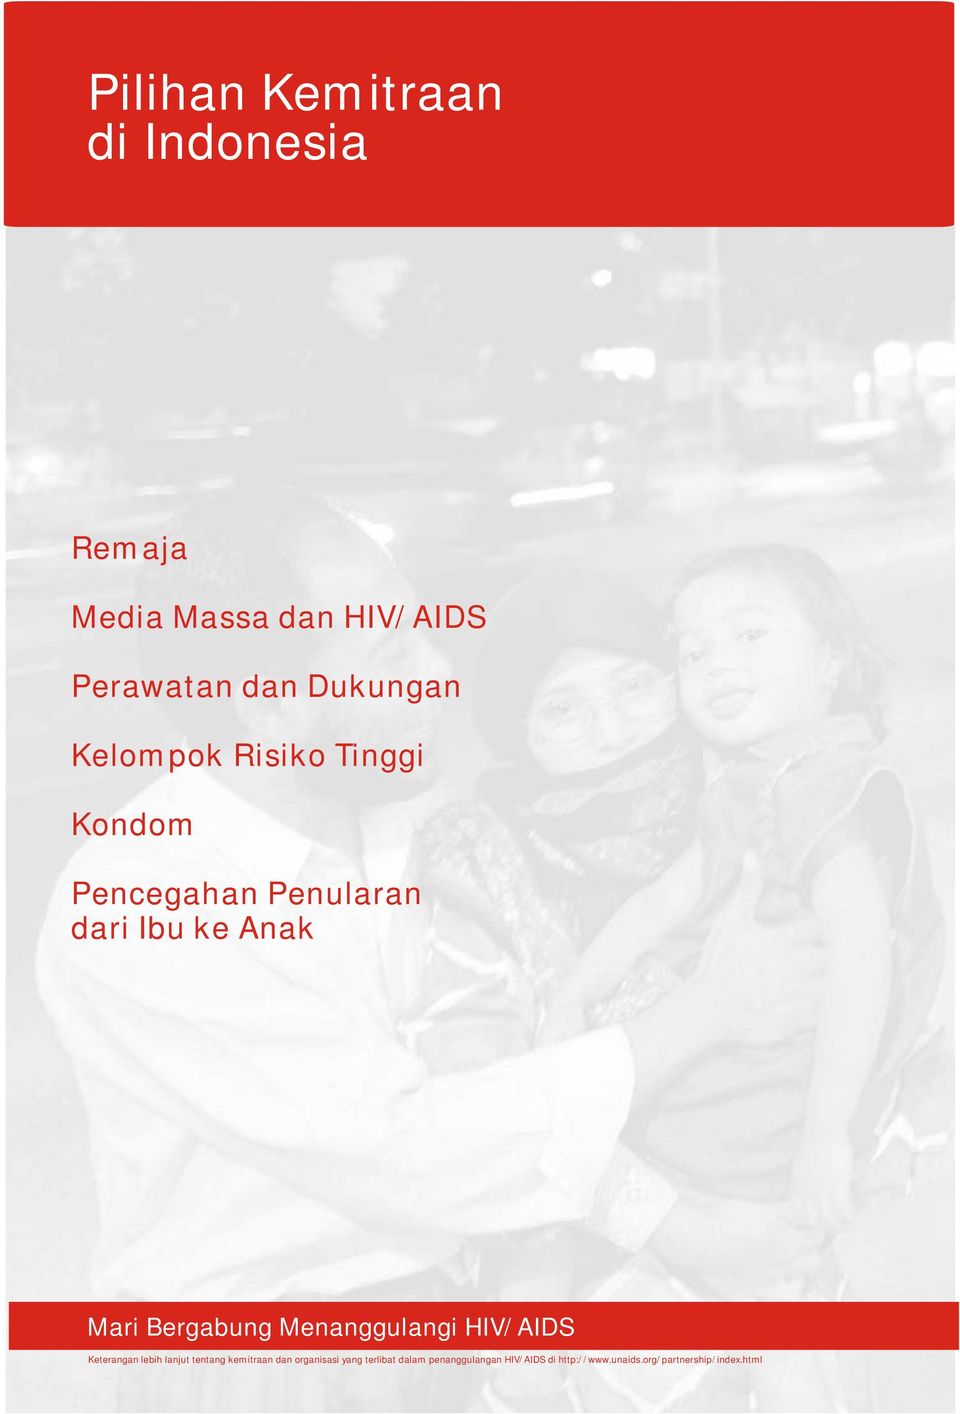 Bergabung Menanggulangi HIV/AIDS Keterangan lebih lanjut tentang kemitraan dan